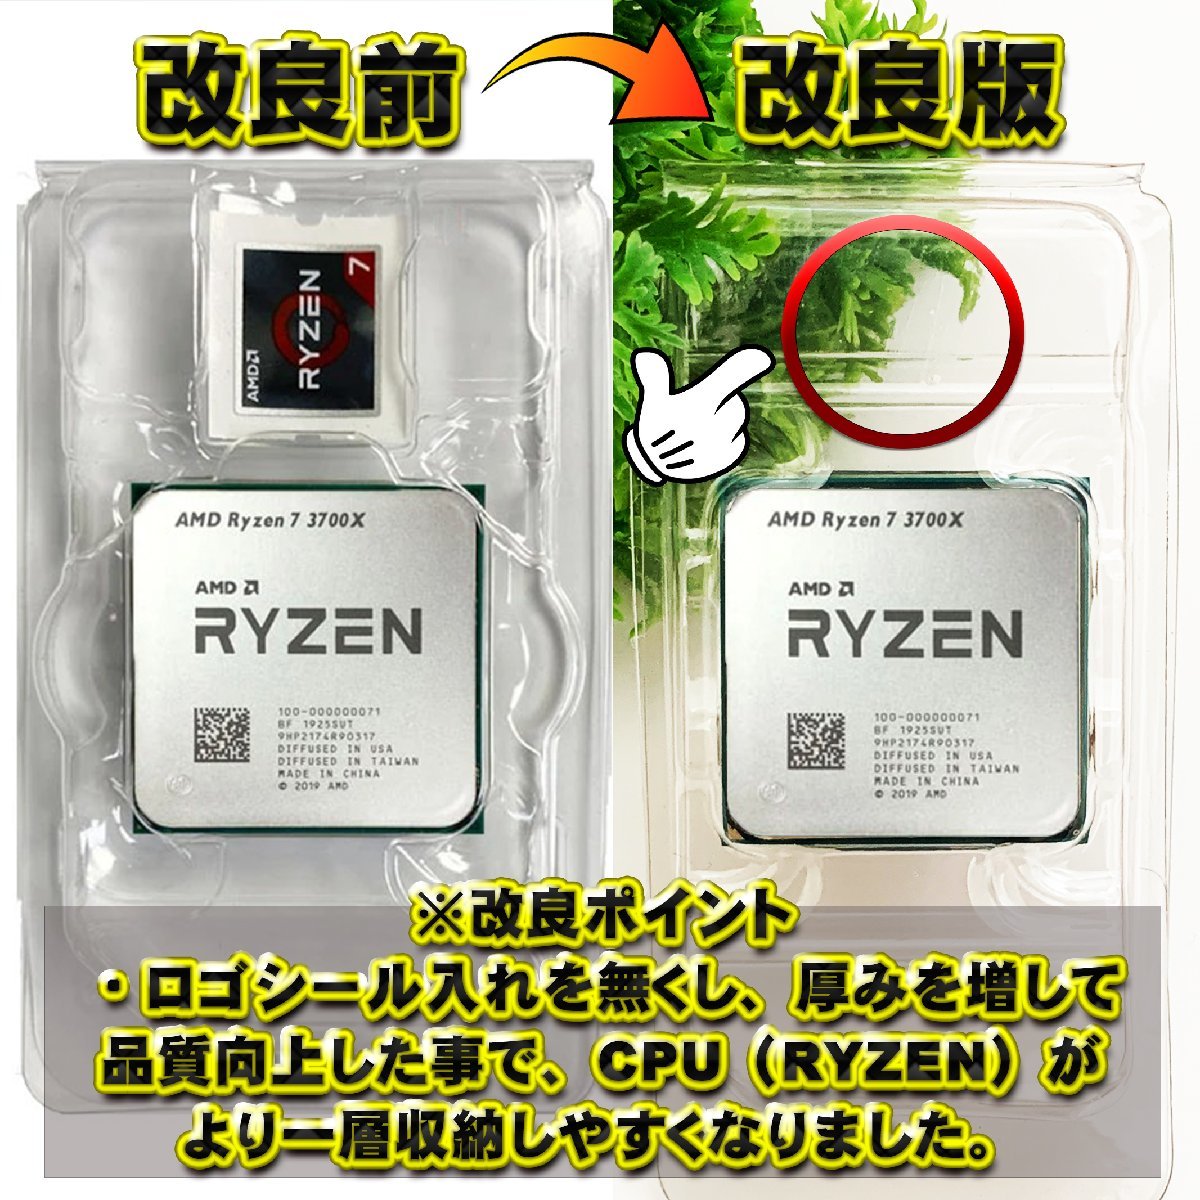 【改良版】【 AM4 対応 】CPU シェルケース AMD用 プラスチック【AM4のRYZENにも対応】 保管 収納ケース 10枚_画像4